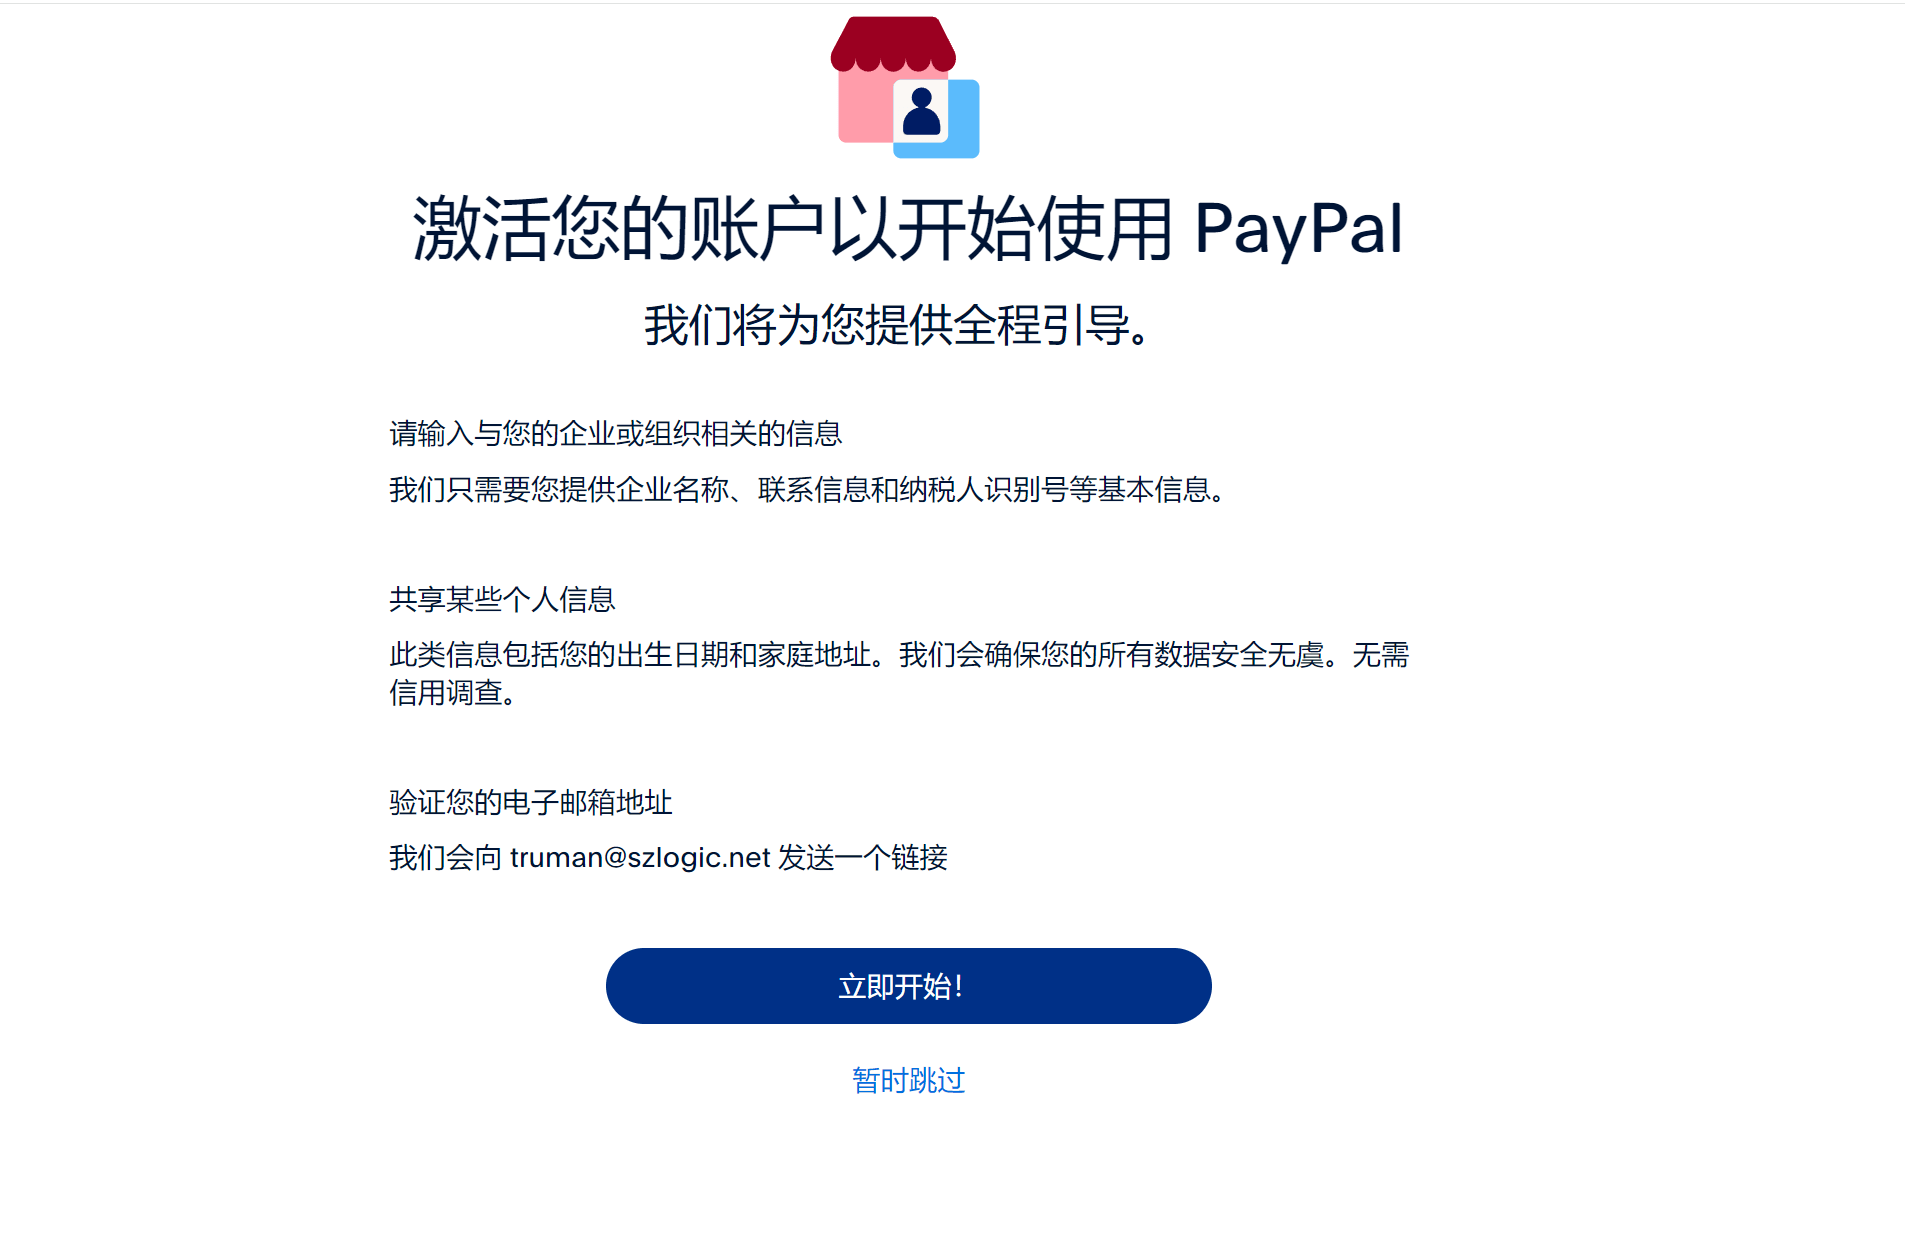 激活企业PayPal账号